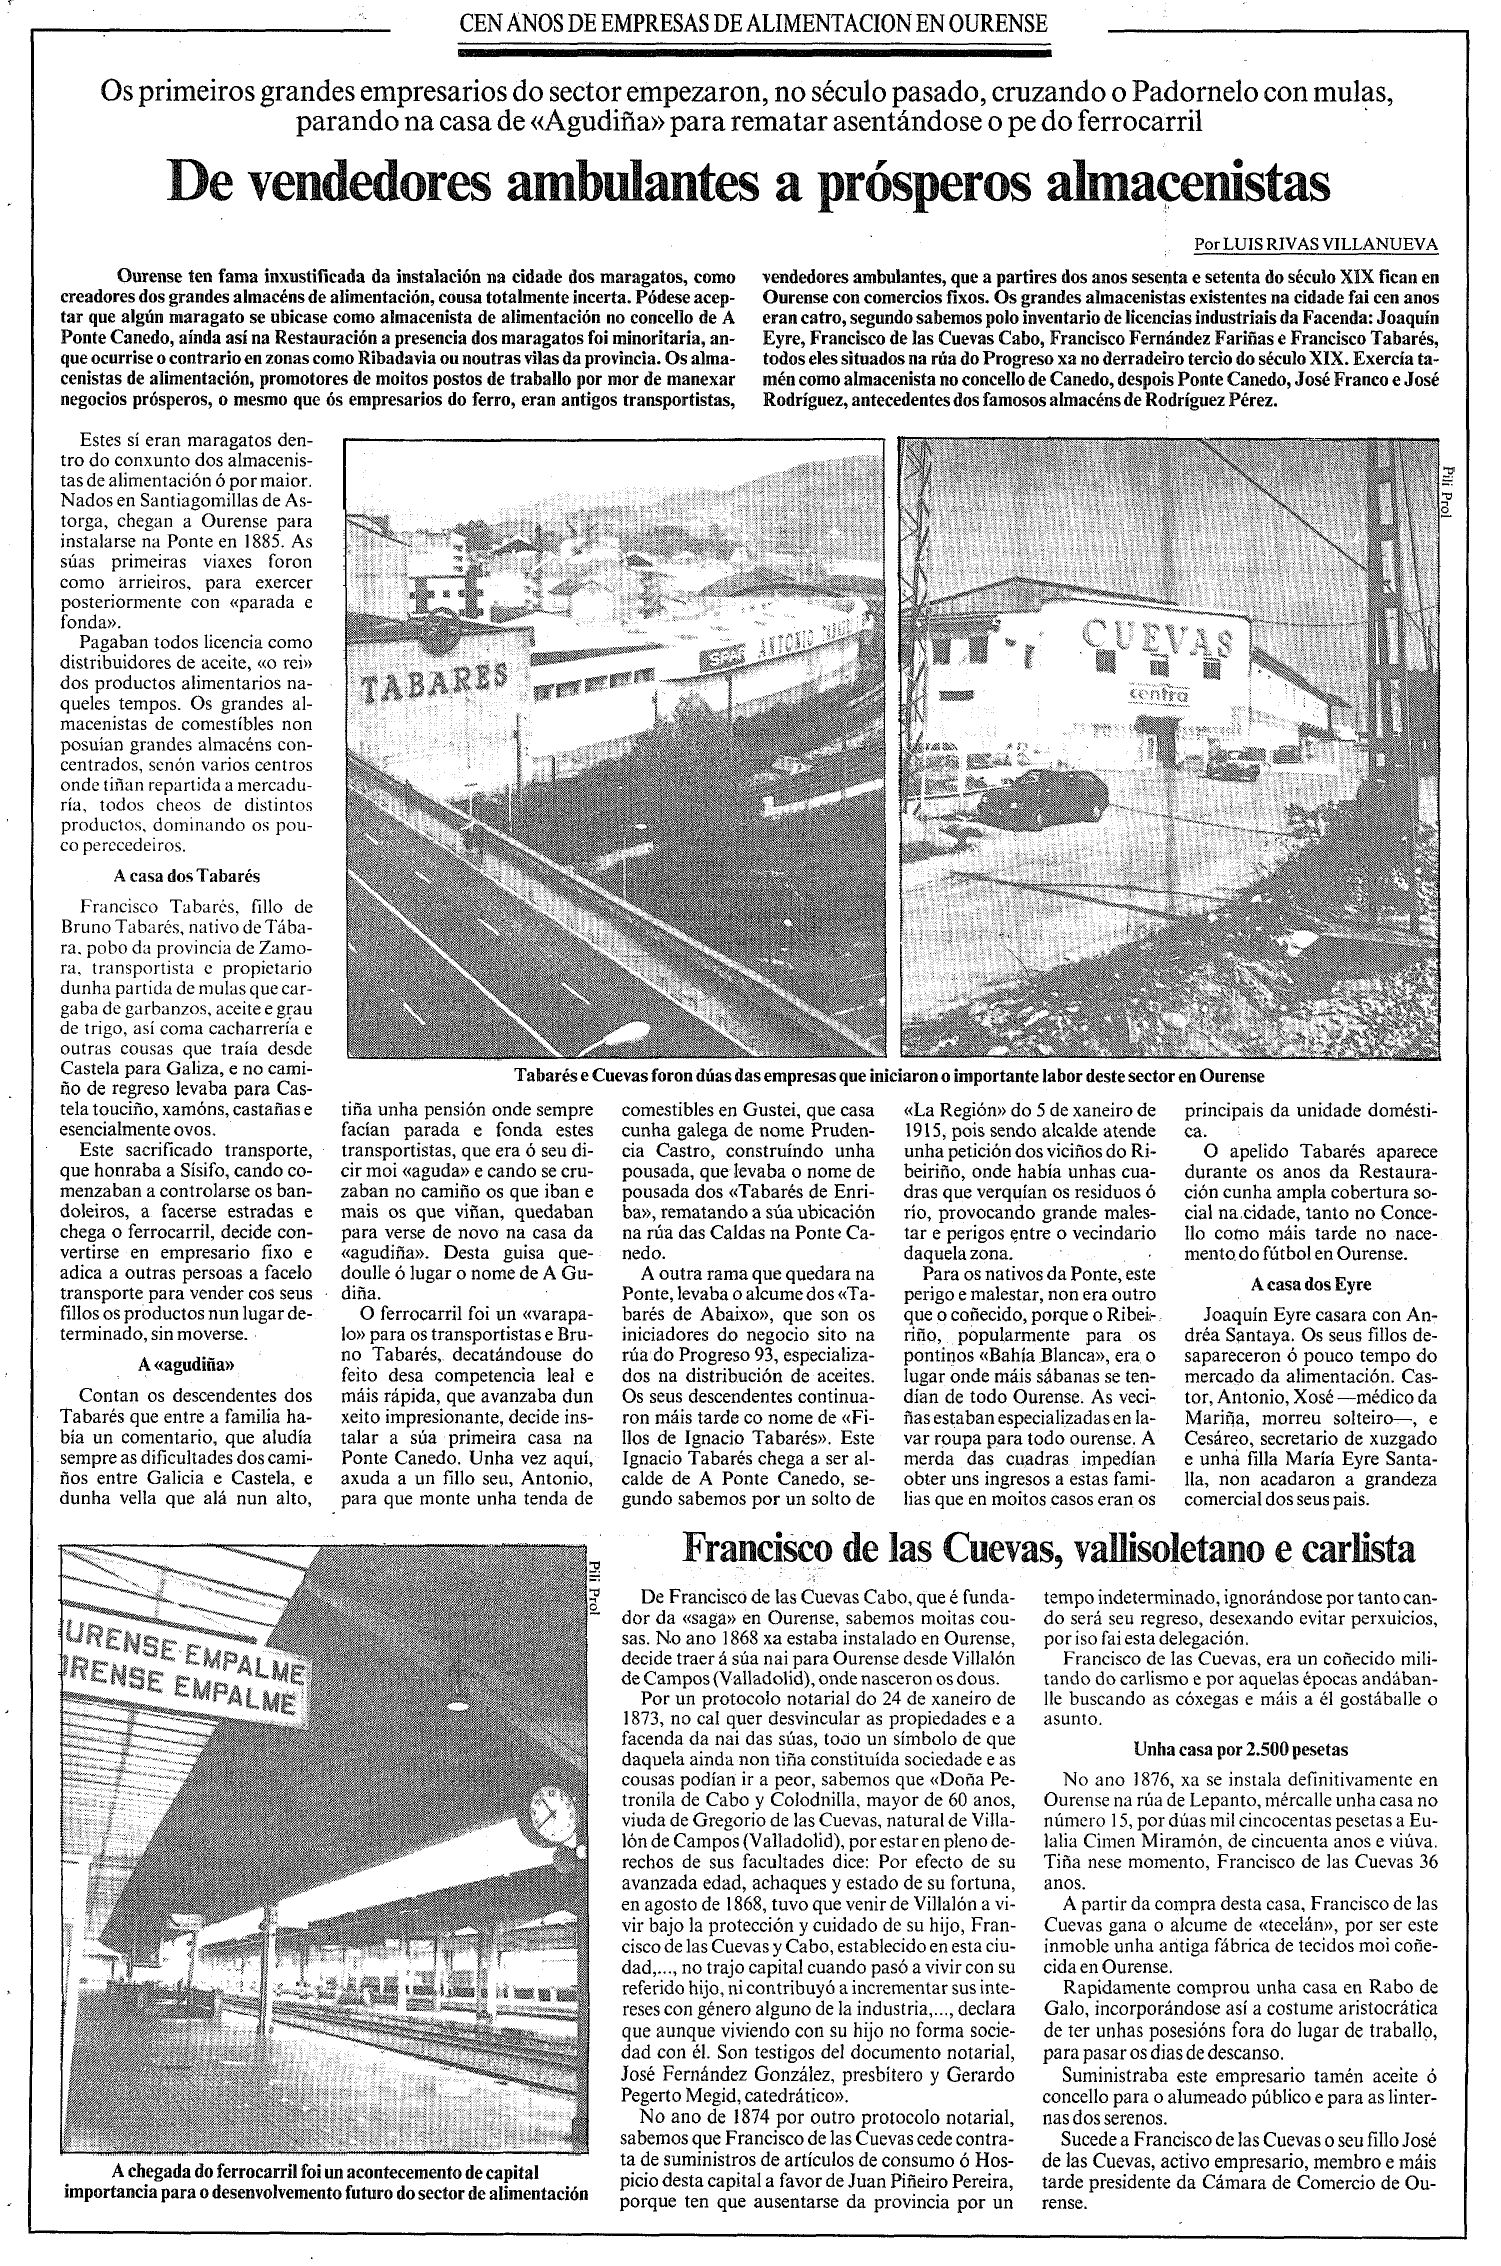 La Voz de Galicia, 20/06/1992